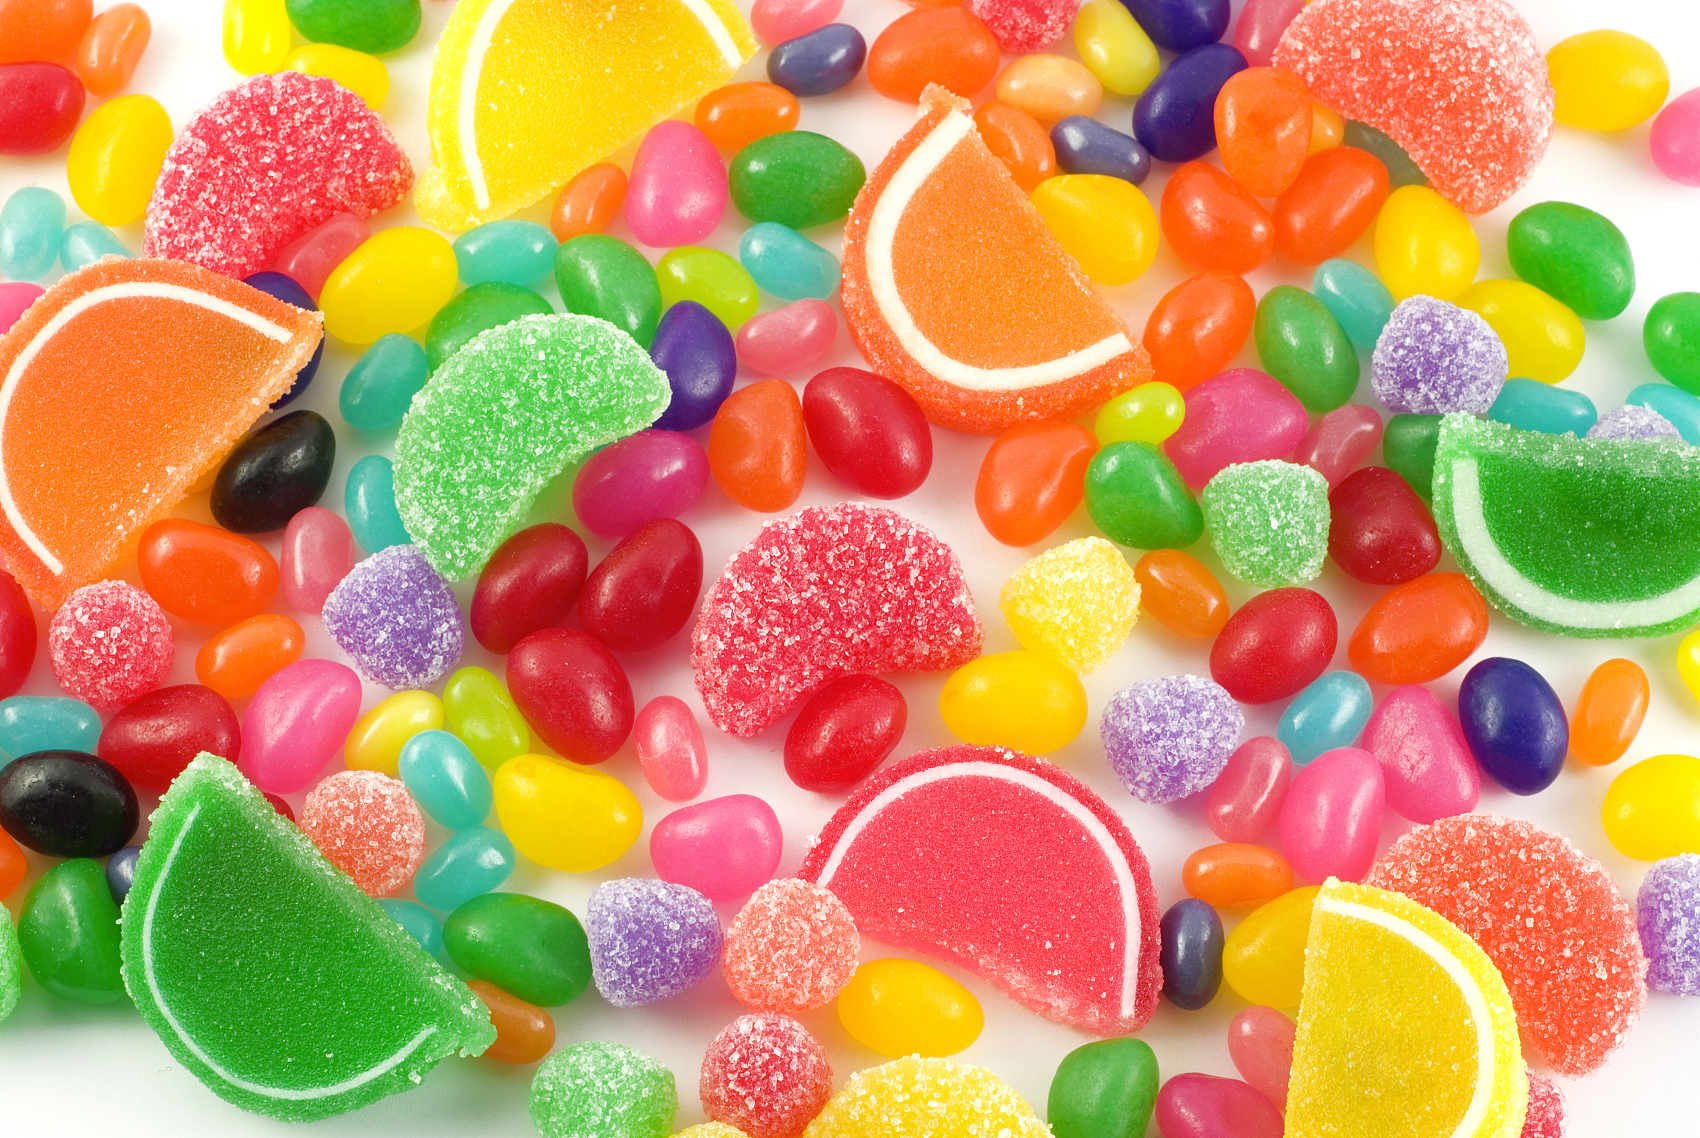 Glukosesirup, der in Süßigkeiten verwendet wird